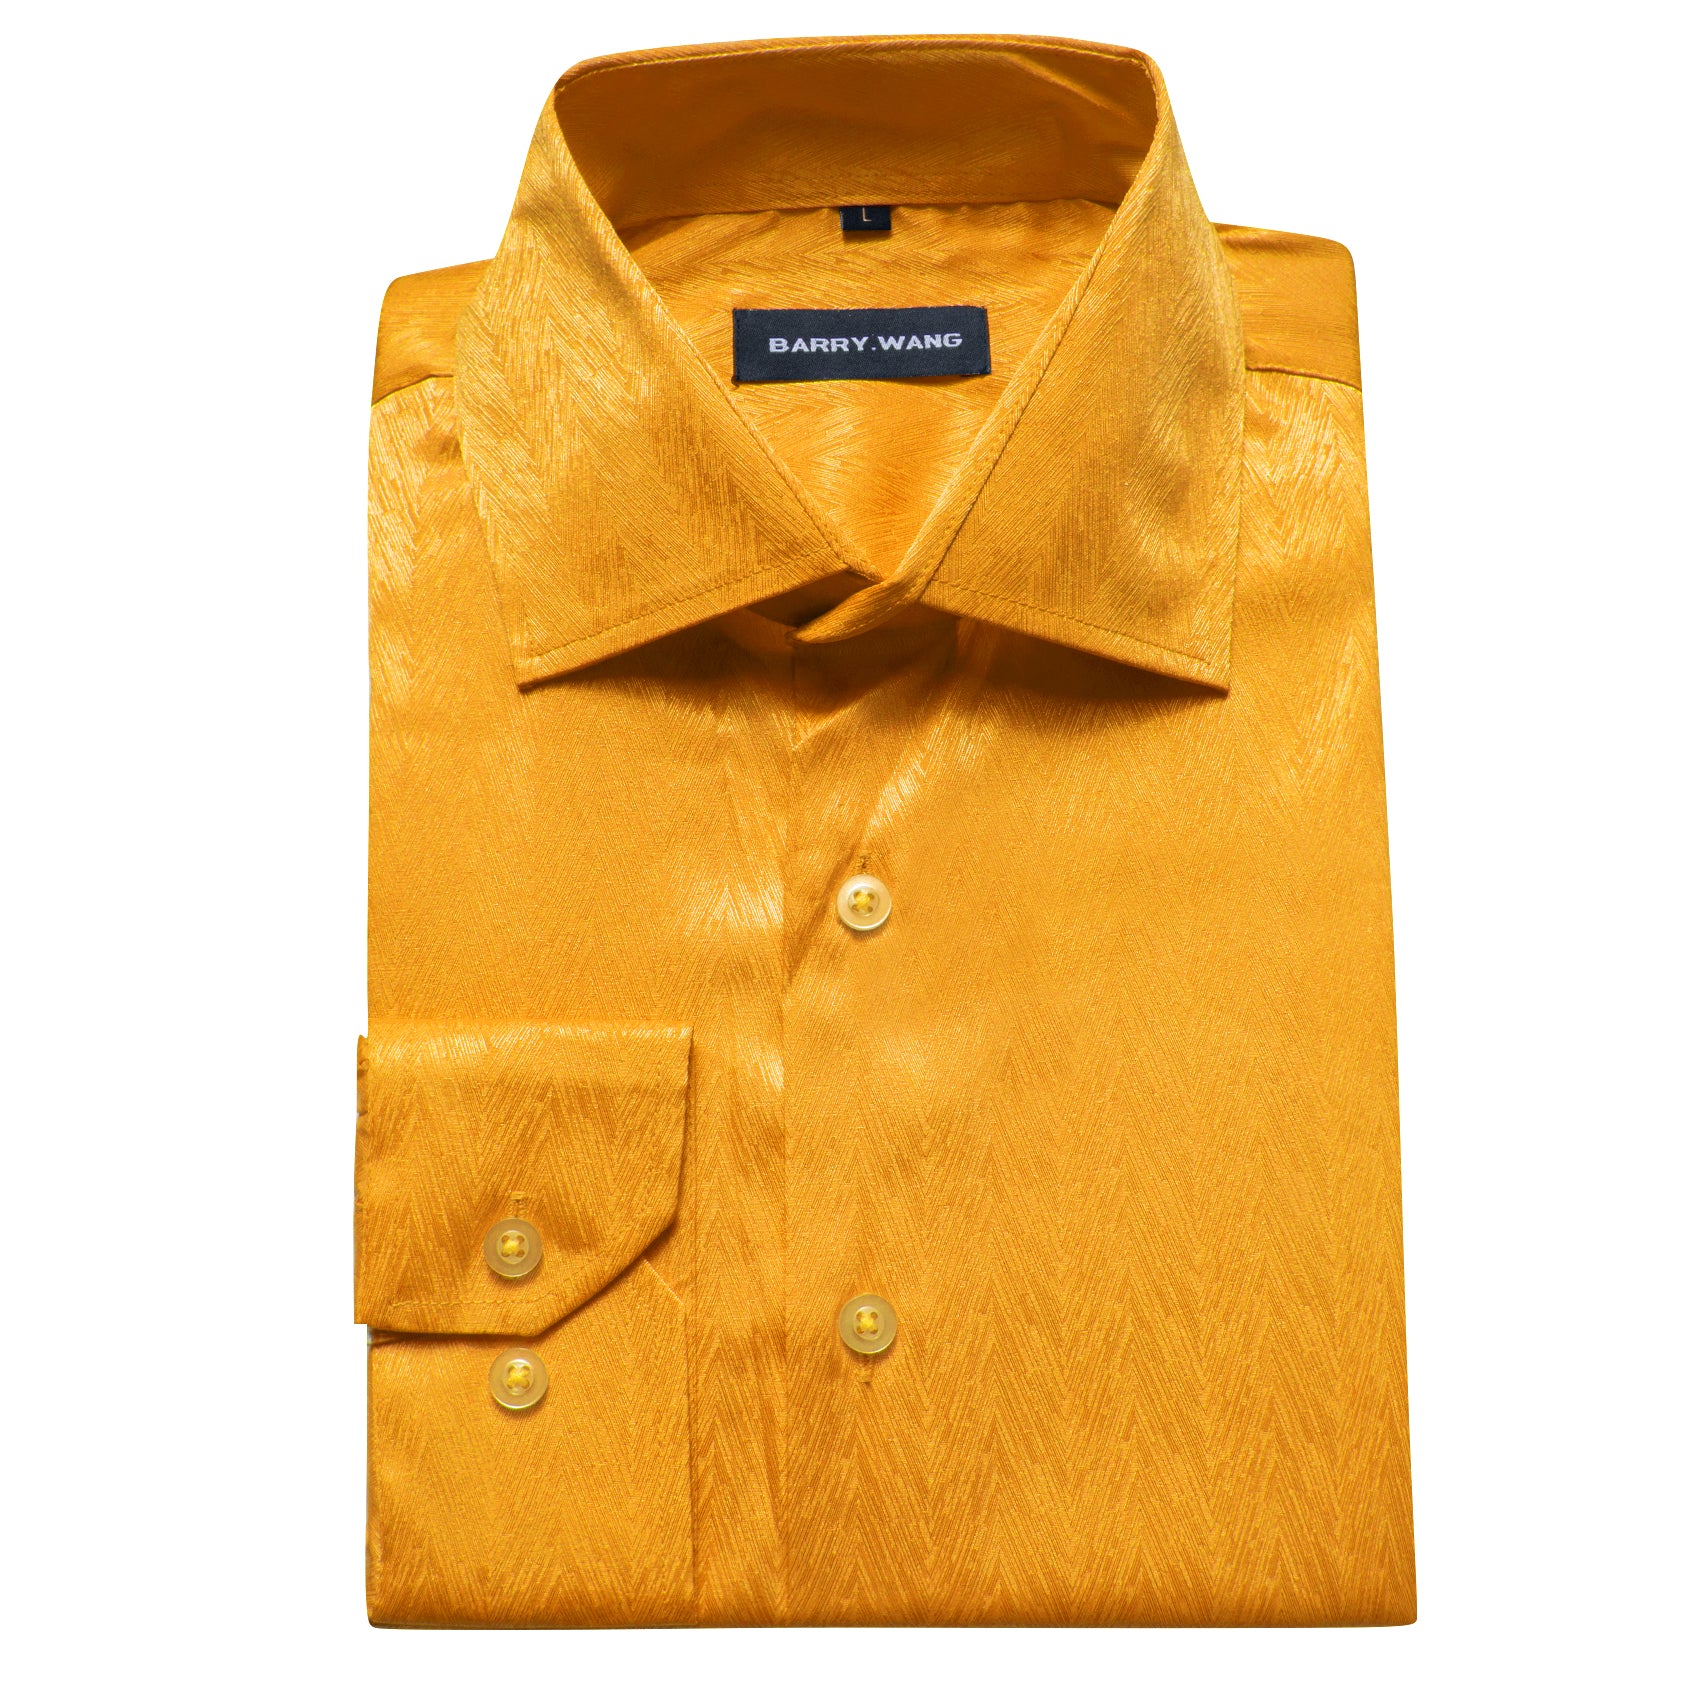 Barry.wang Men's Shirt Fashion Solid Silk Gold Yellow Button Up Shirt